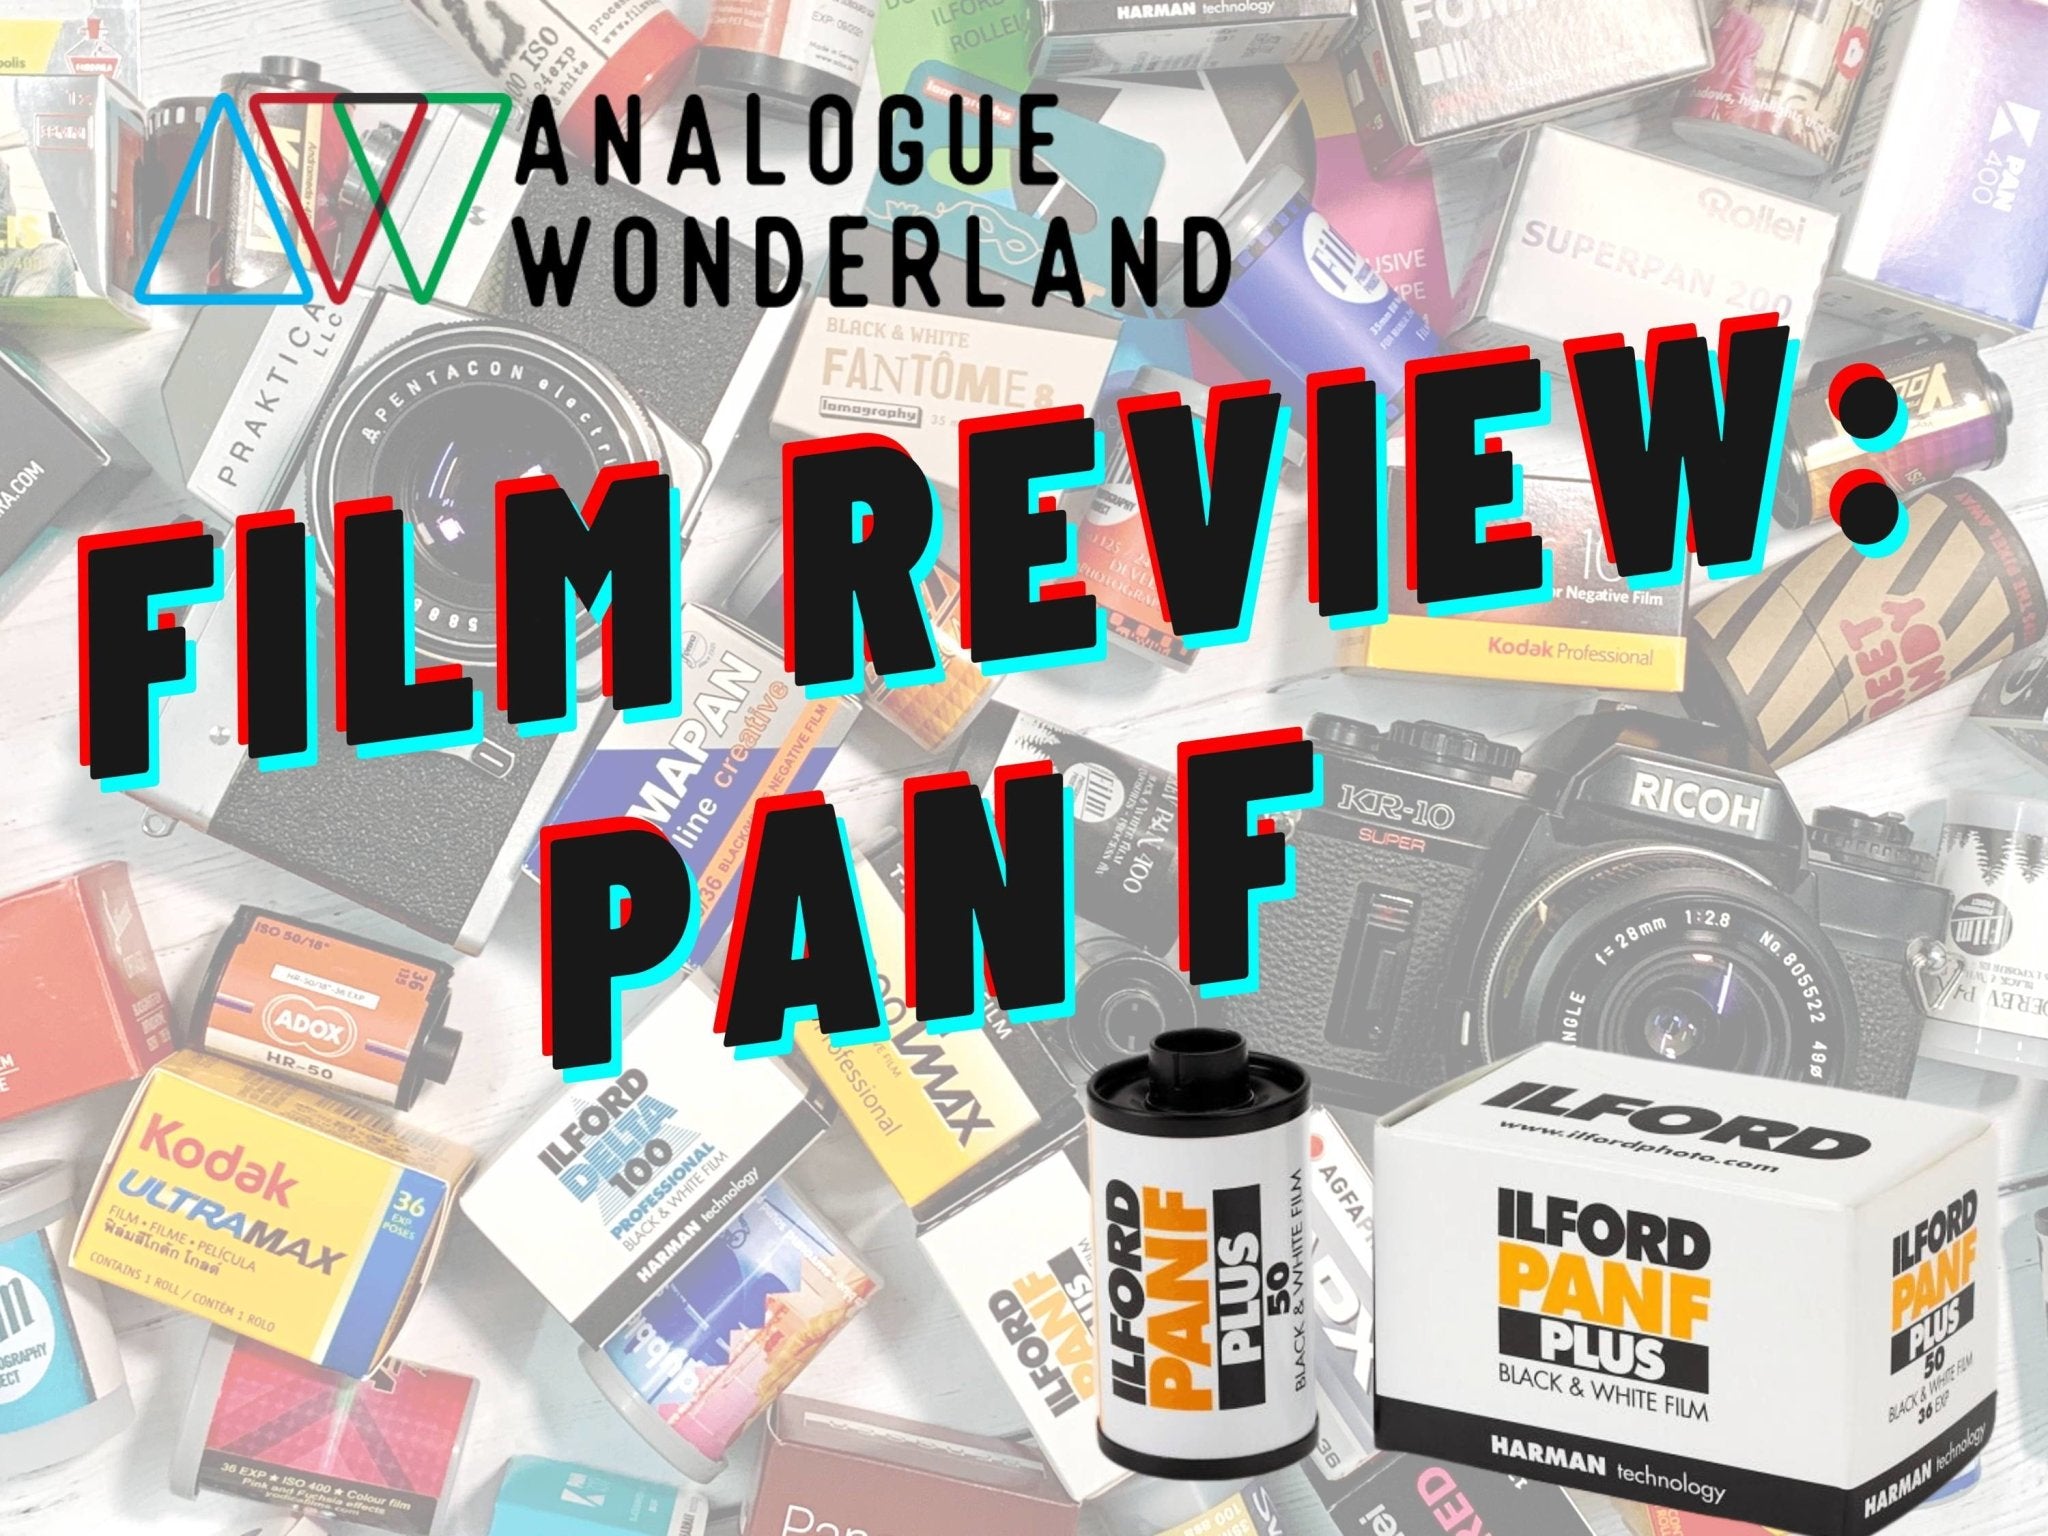 Ilford Pan F Review - Analogue Wonderland